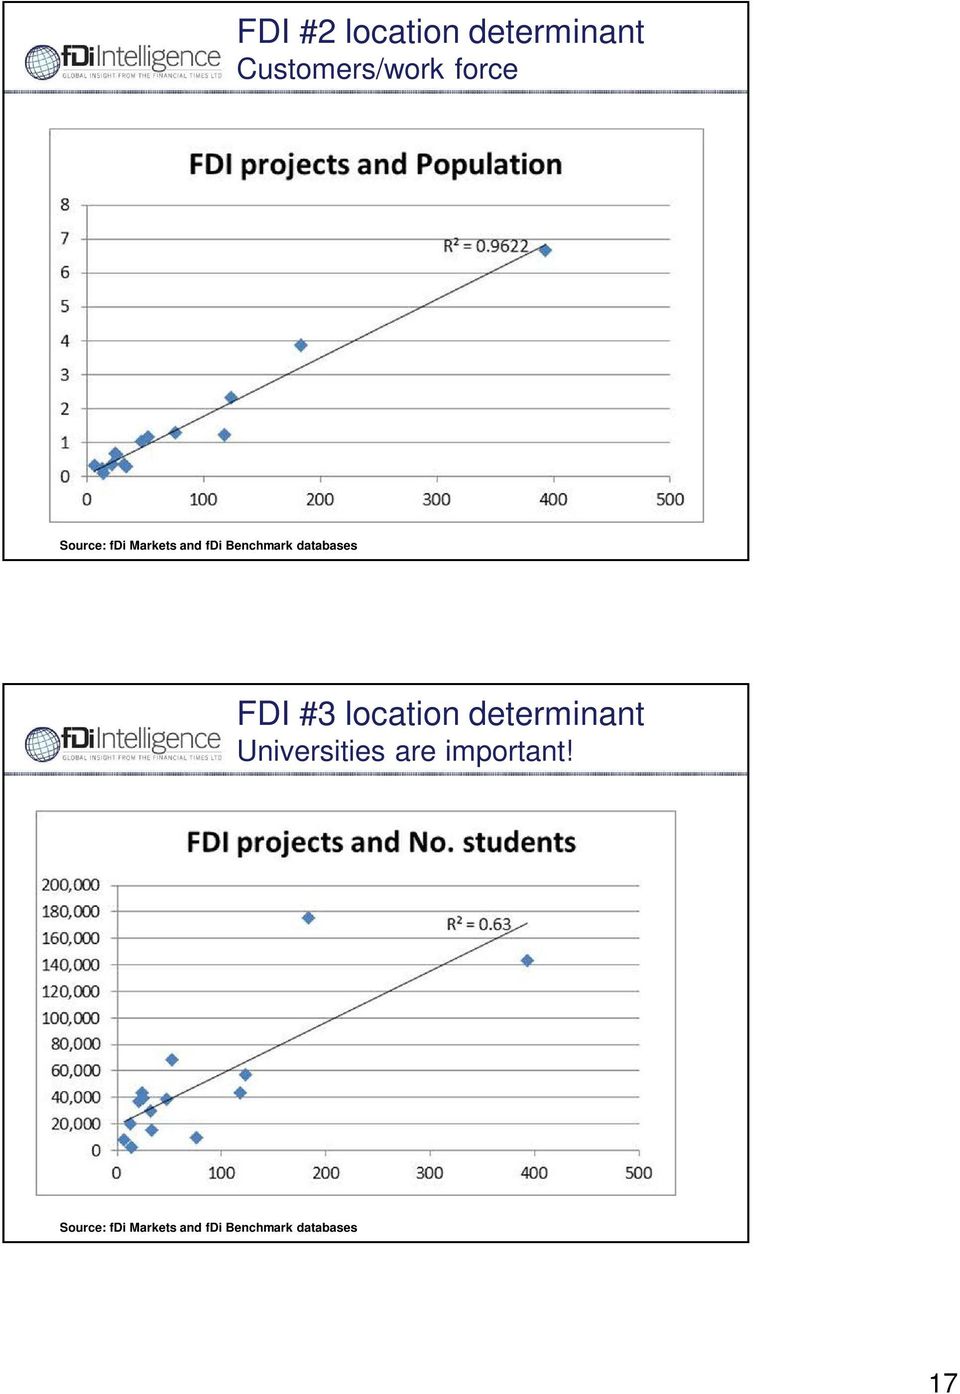 FDI #3 location determinant Universities are